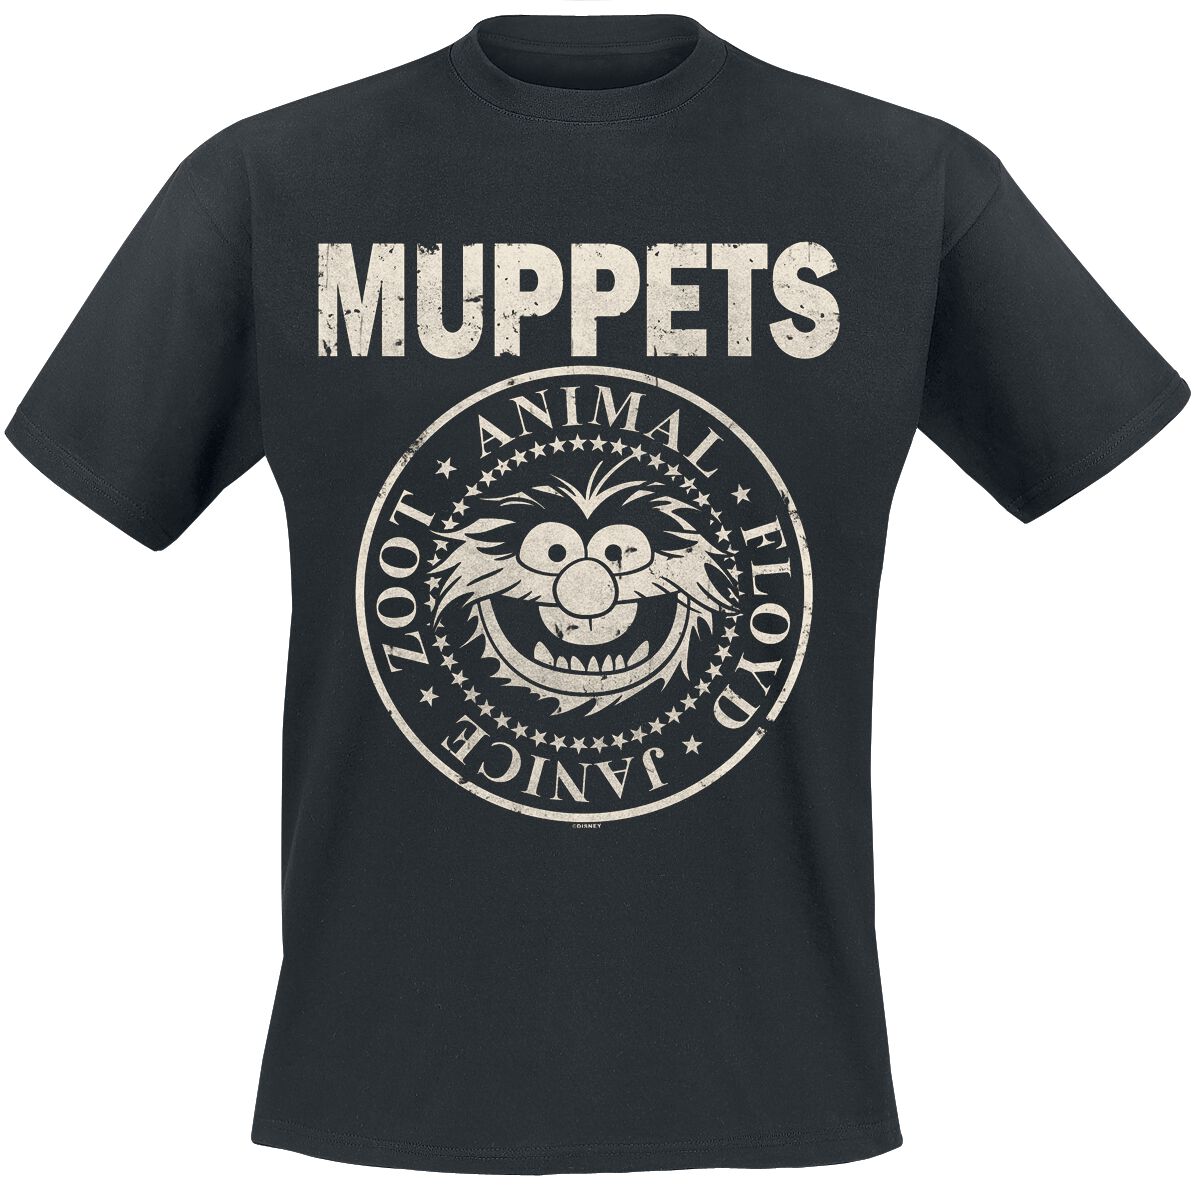 Die Muppets T-Shirt - Animal - Rock ´n Roll - S bis XXL - für Männer - Größe S - schwarz  - EMP exklusives Merchandise!